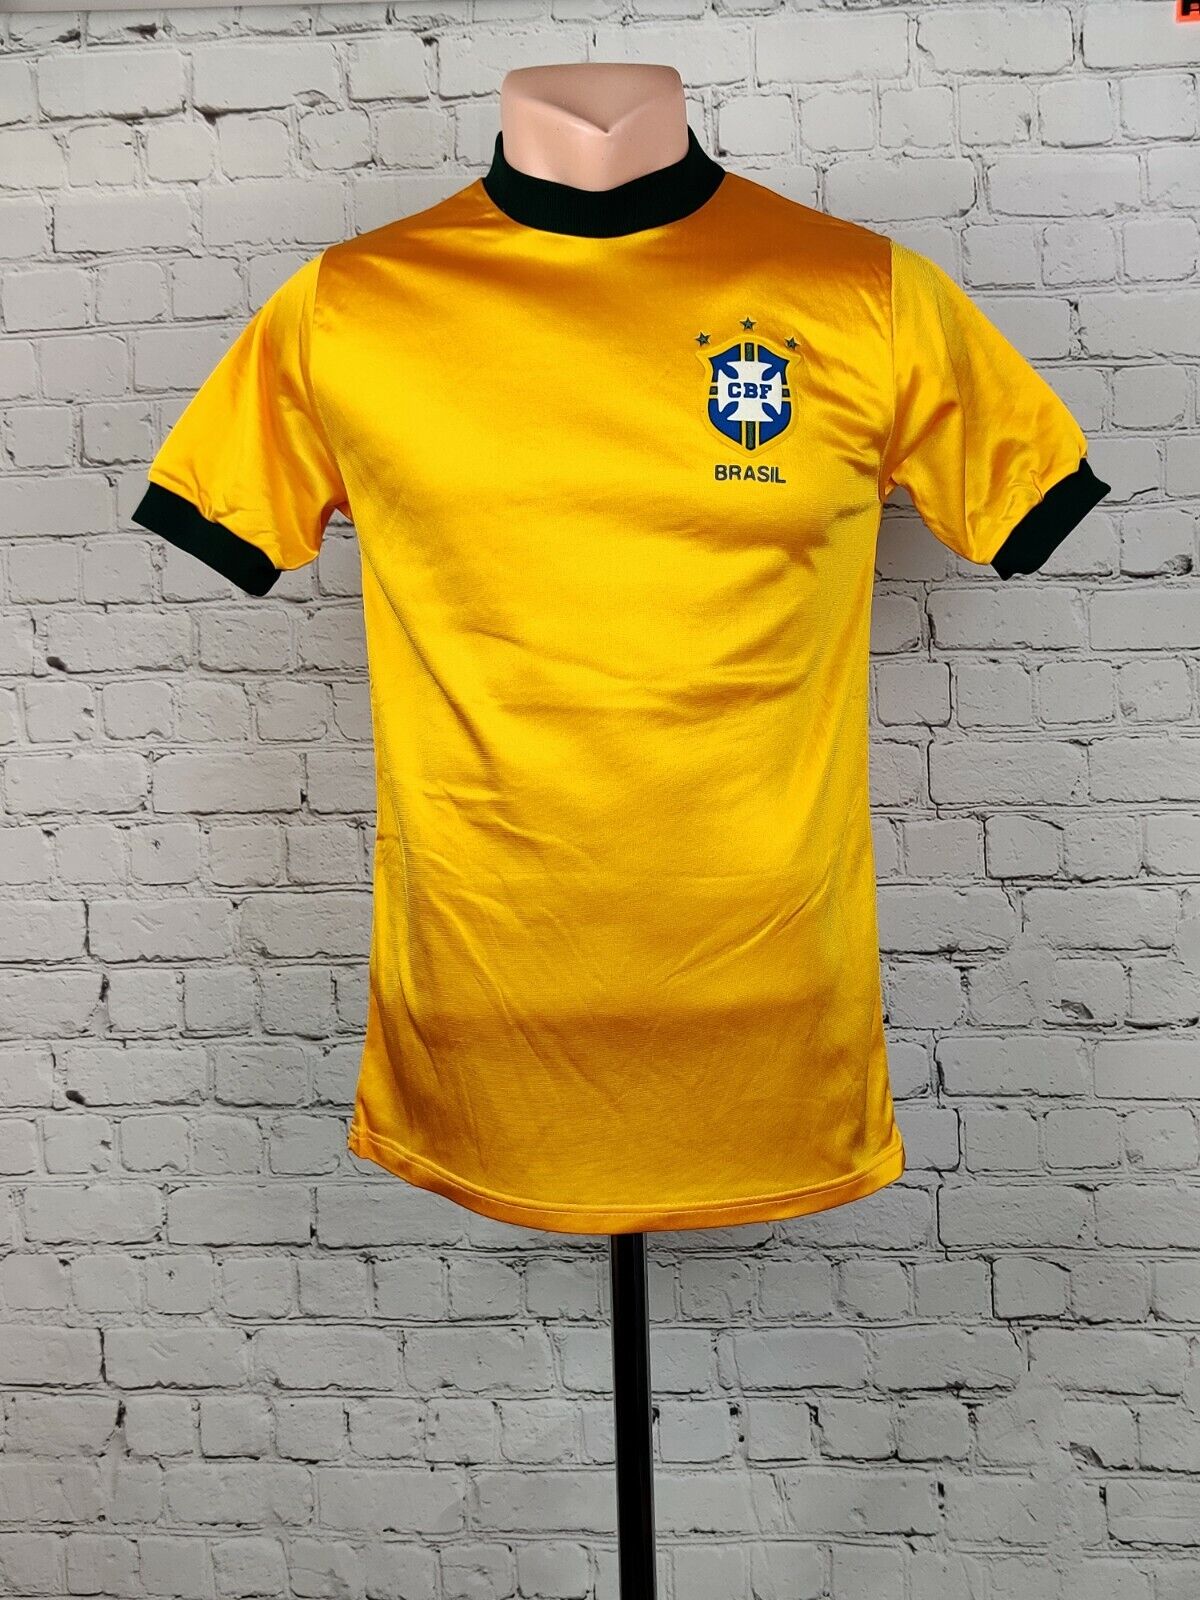 1970 brazil kit